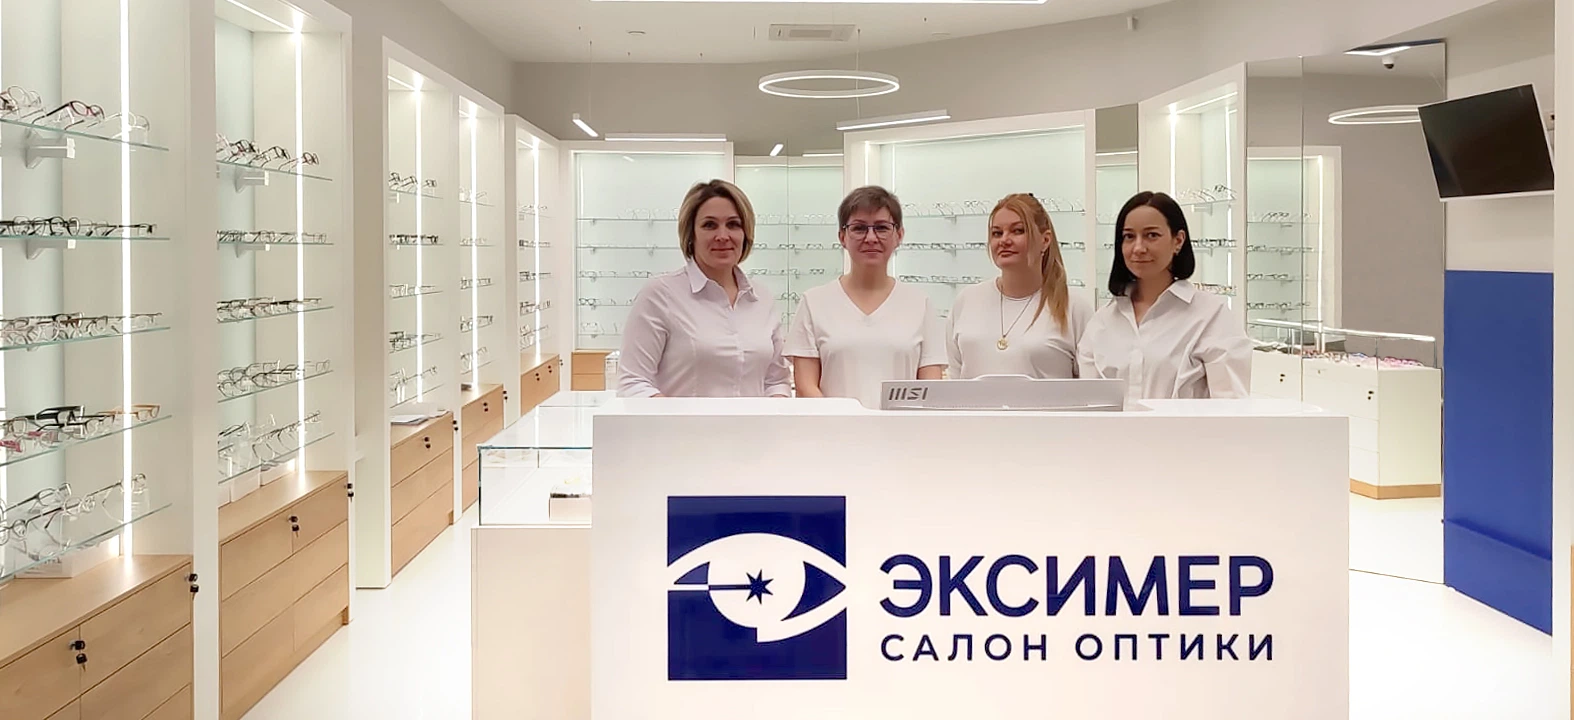 салон оптики Эксимер в Новосибирске